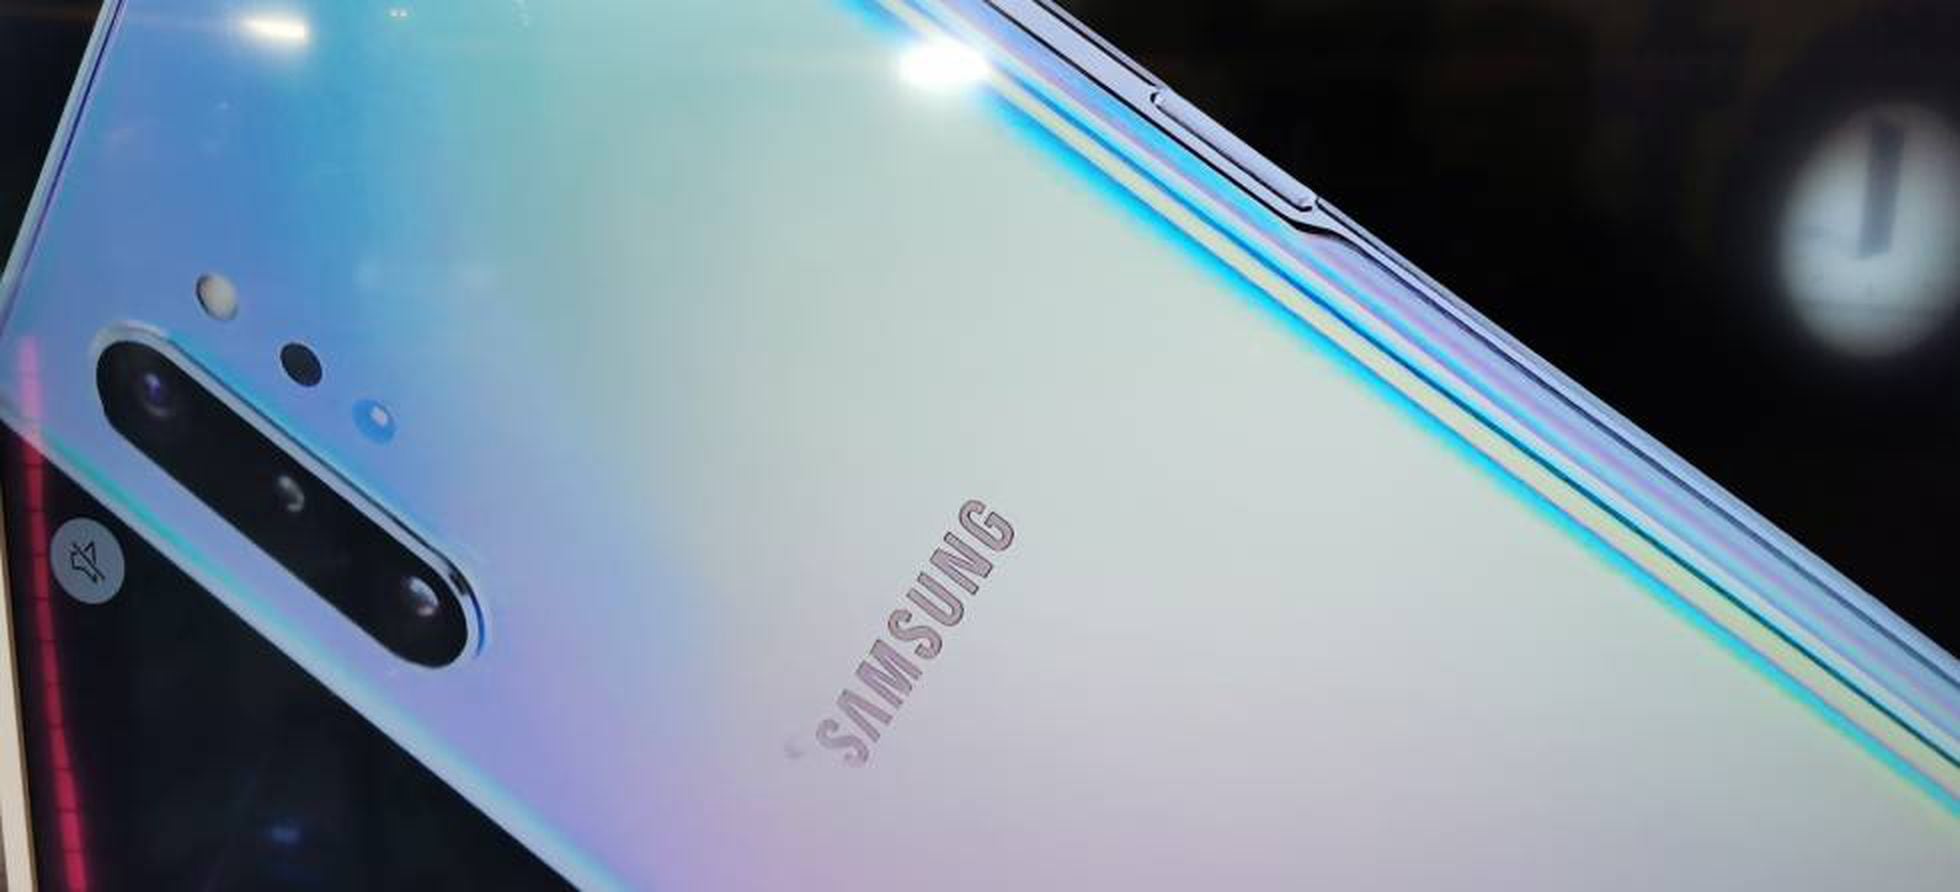 Samsung Galaxy Note 10 +: el móvil con varita mágica, Tecnología